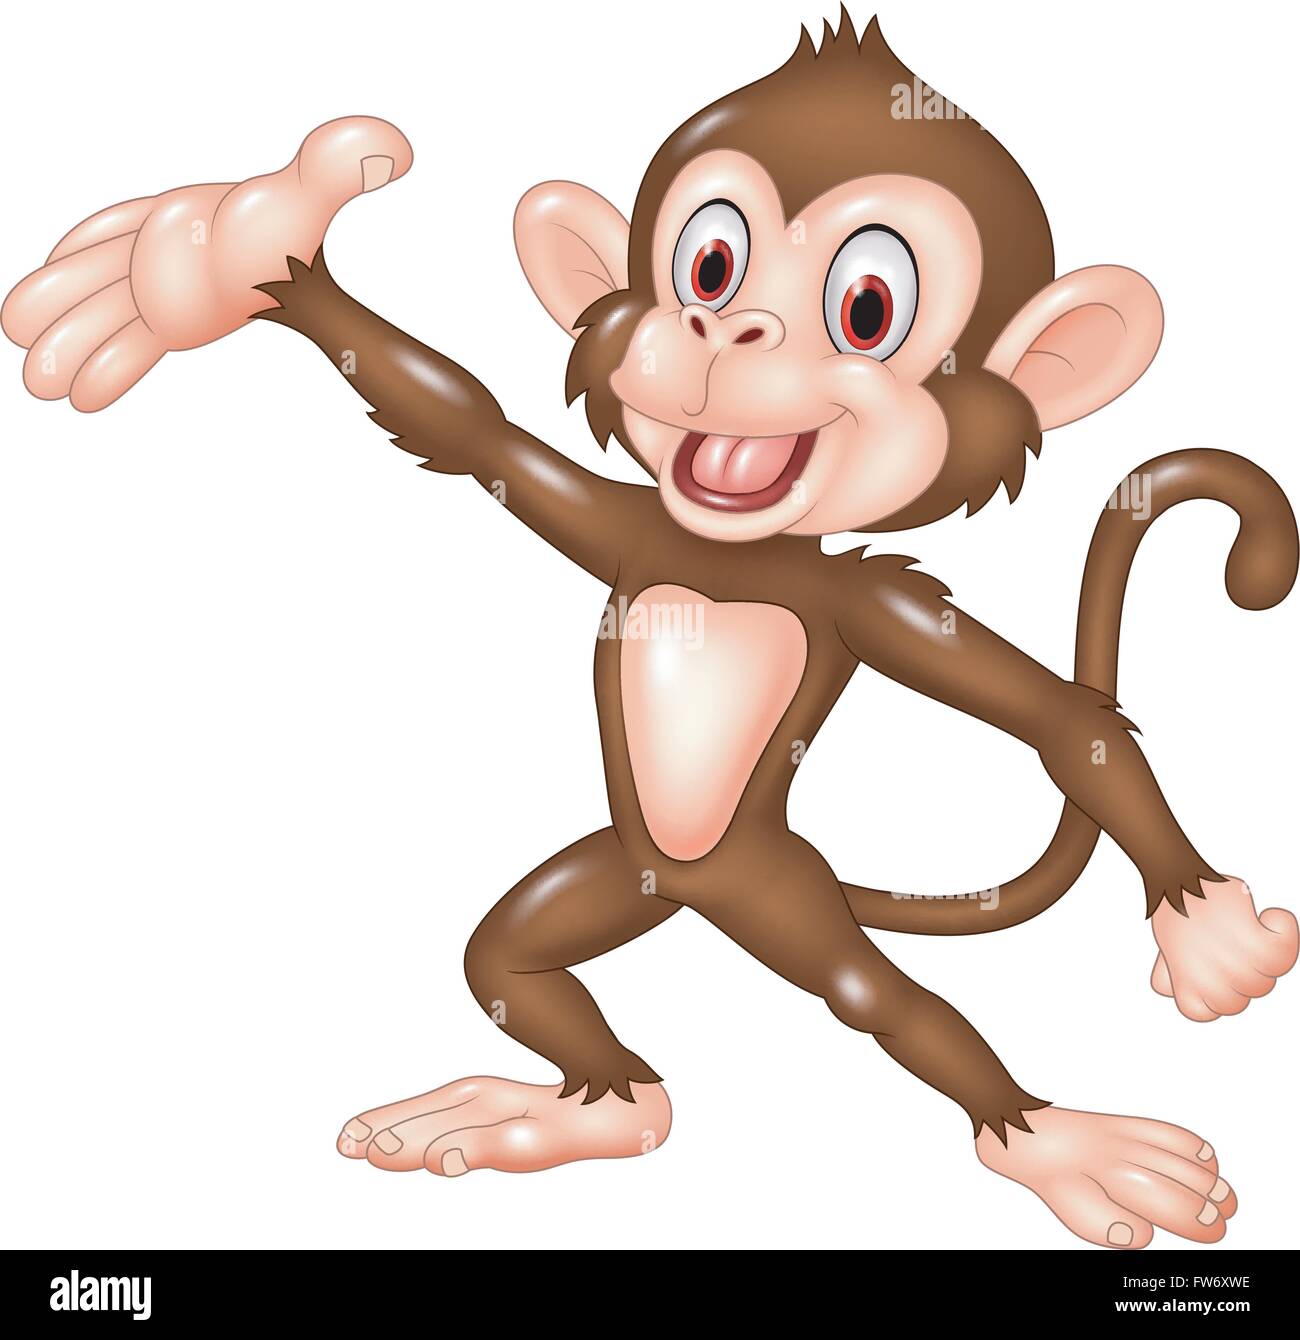 Cartoon funny monkey présentation isolé sur fond blanc Illustration de Vecteur